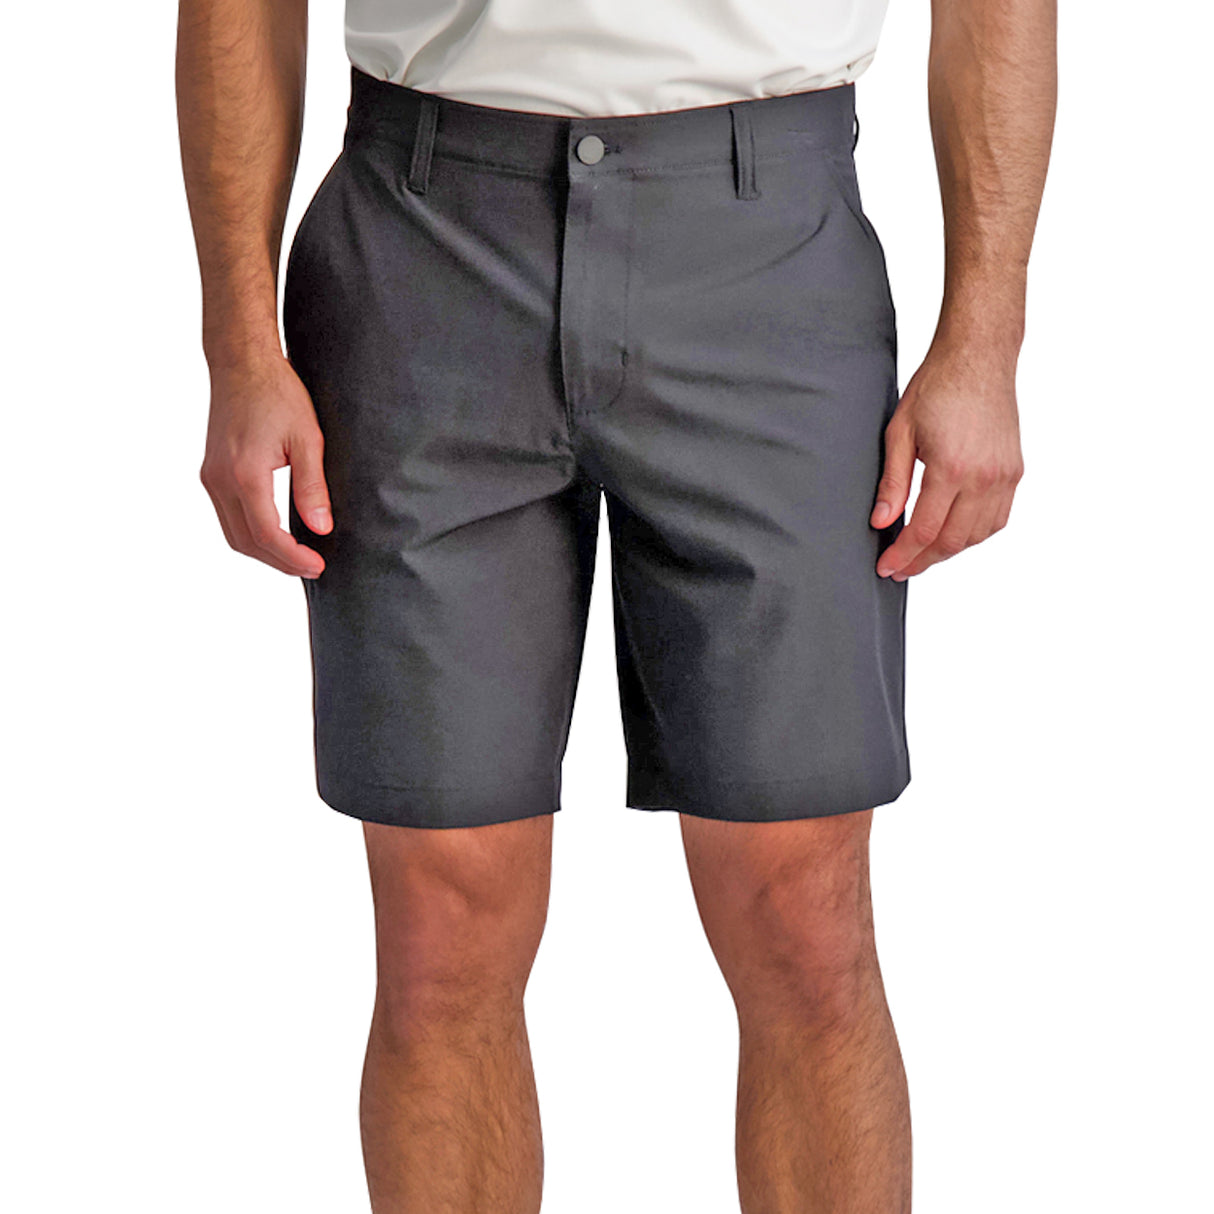 Chaps Performance 5 Pocket Strech Waistband Golf Shorts